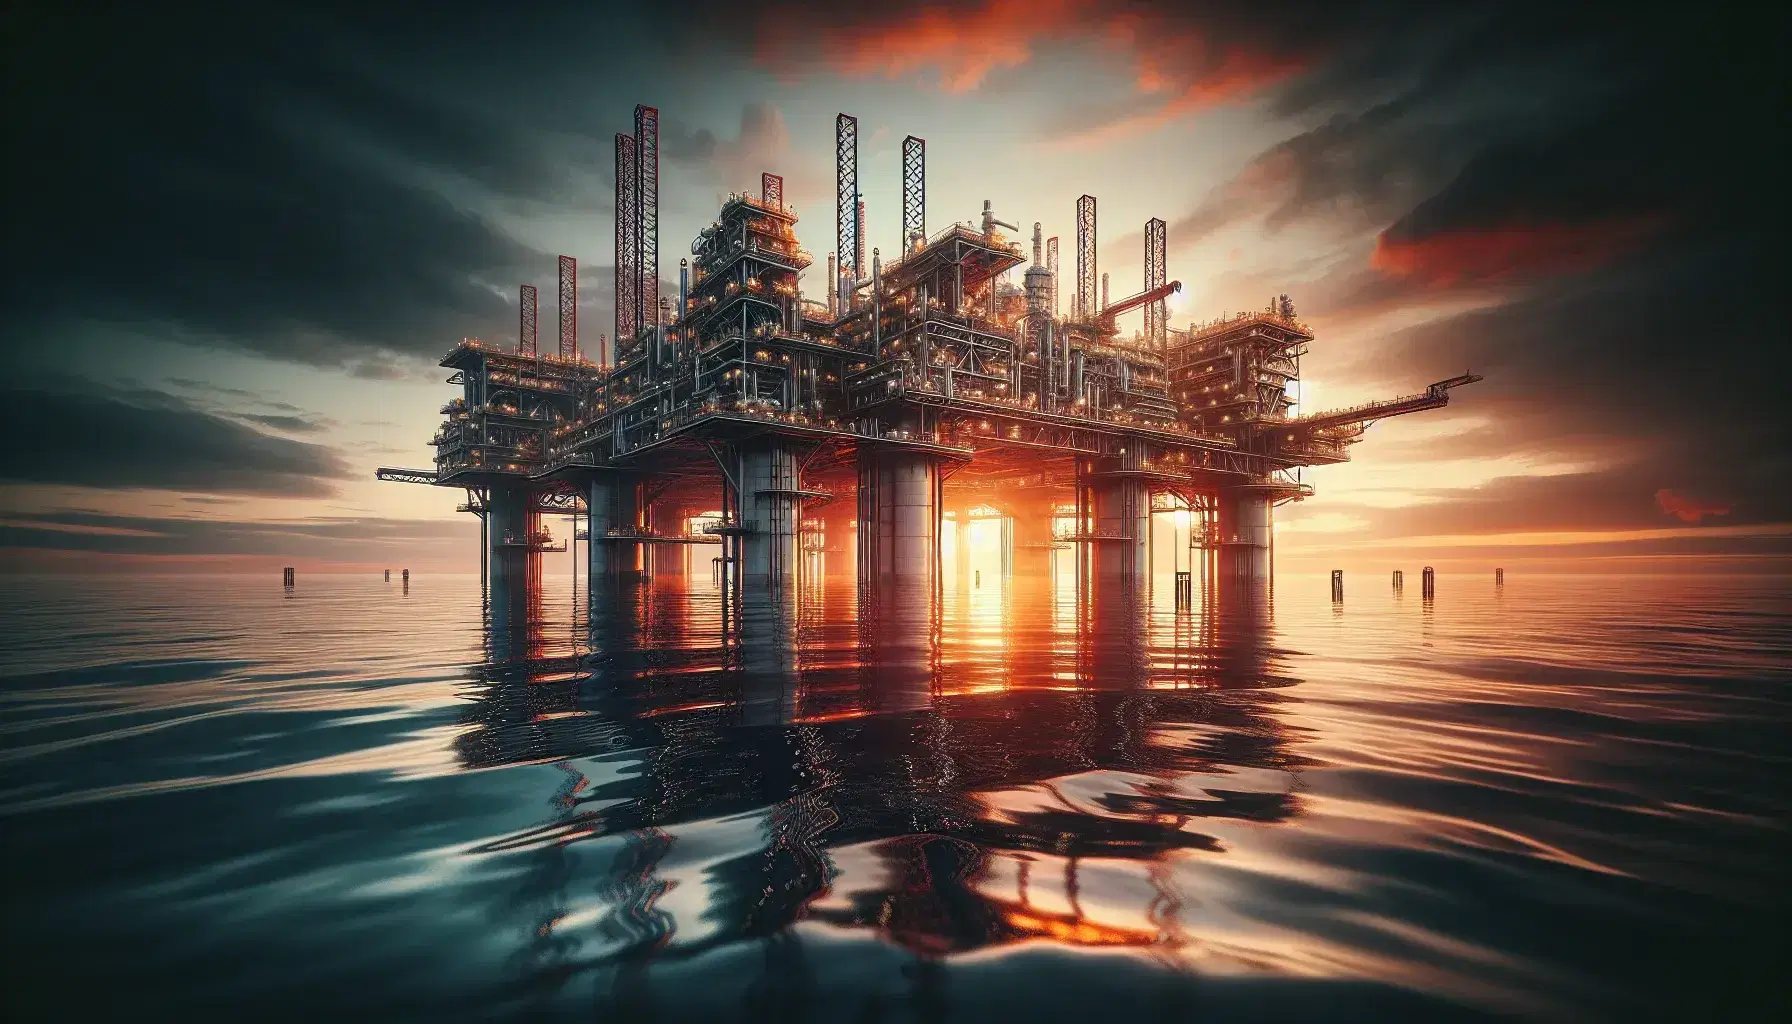 Piattaforma petrolifera offshore al tramonto con cielo arancione riflesso sul mare calmo, struttura metallica imponente senza persone o barche.